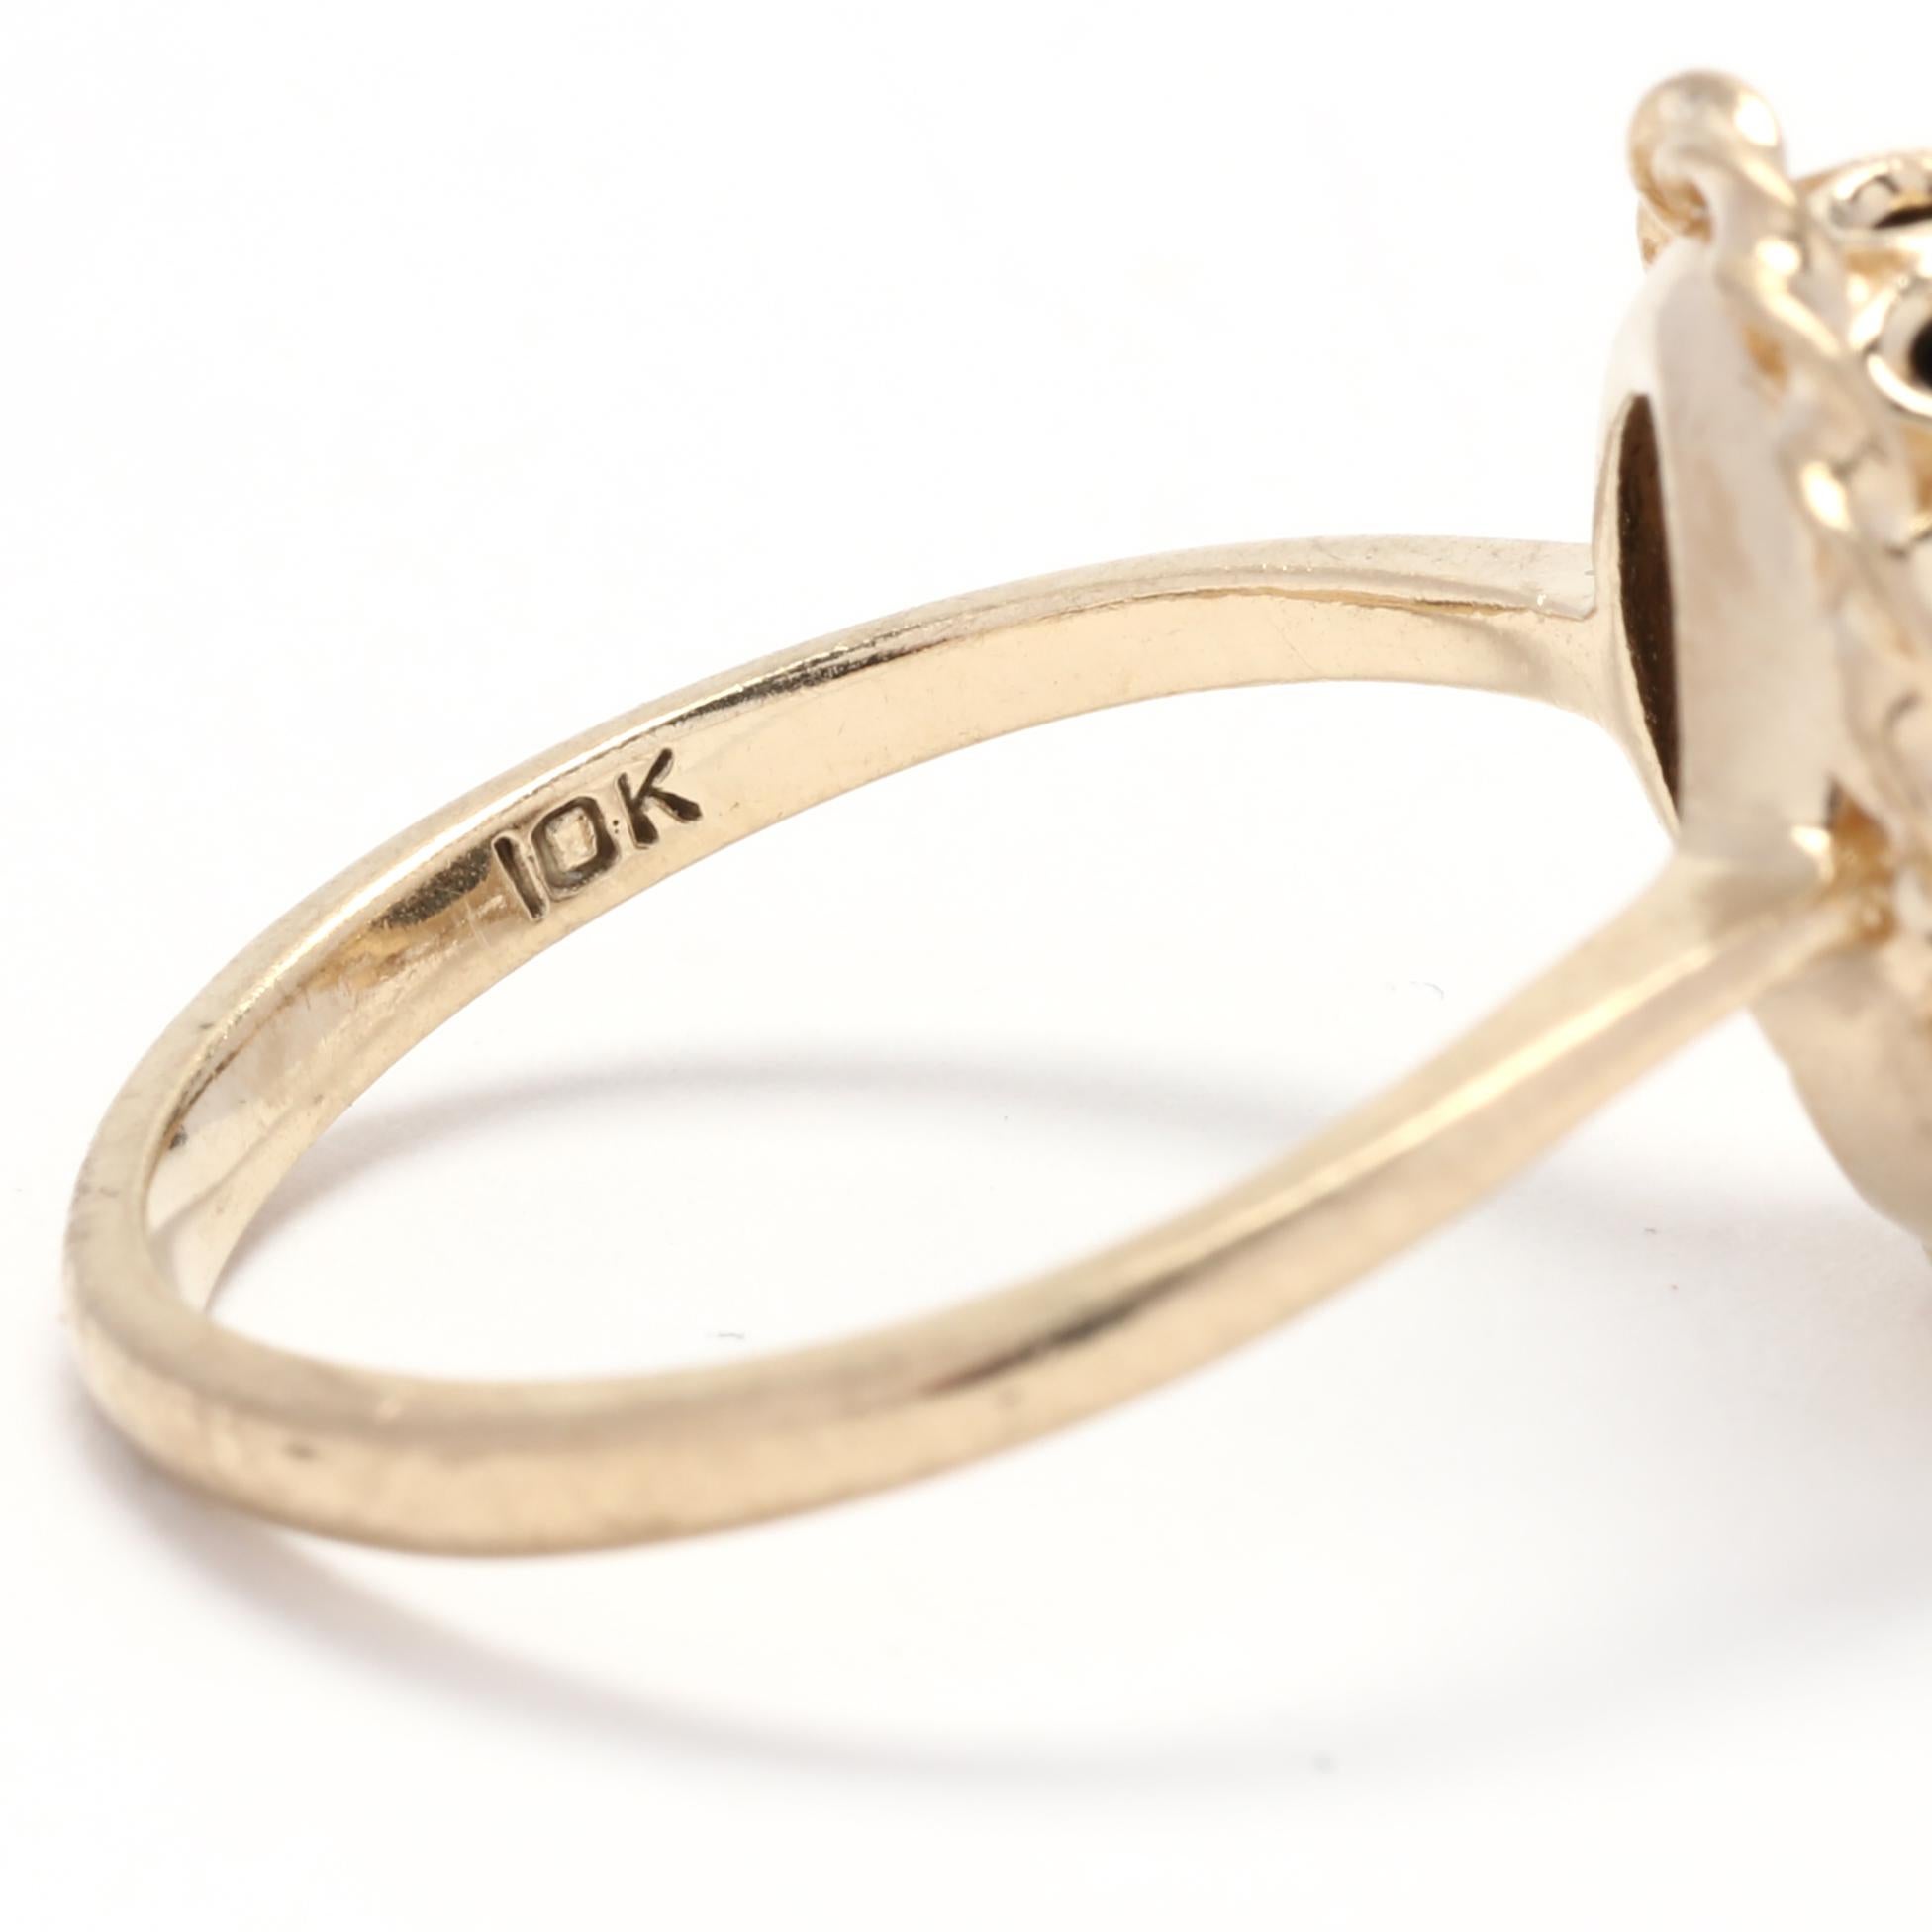 Ovaler Ring mit Diamant und schwarzem Onyx, 10k Gelbgold, Ring Größe 5,5, Ausgefallener Ring  für Damen oder Herren